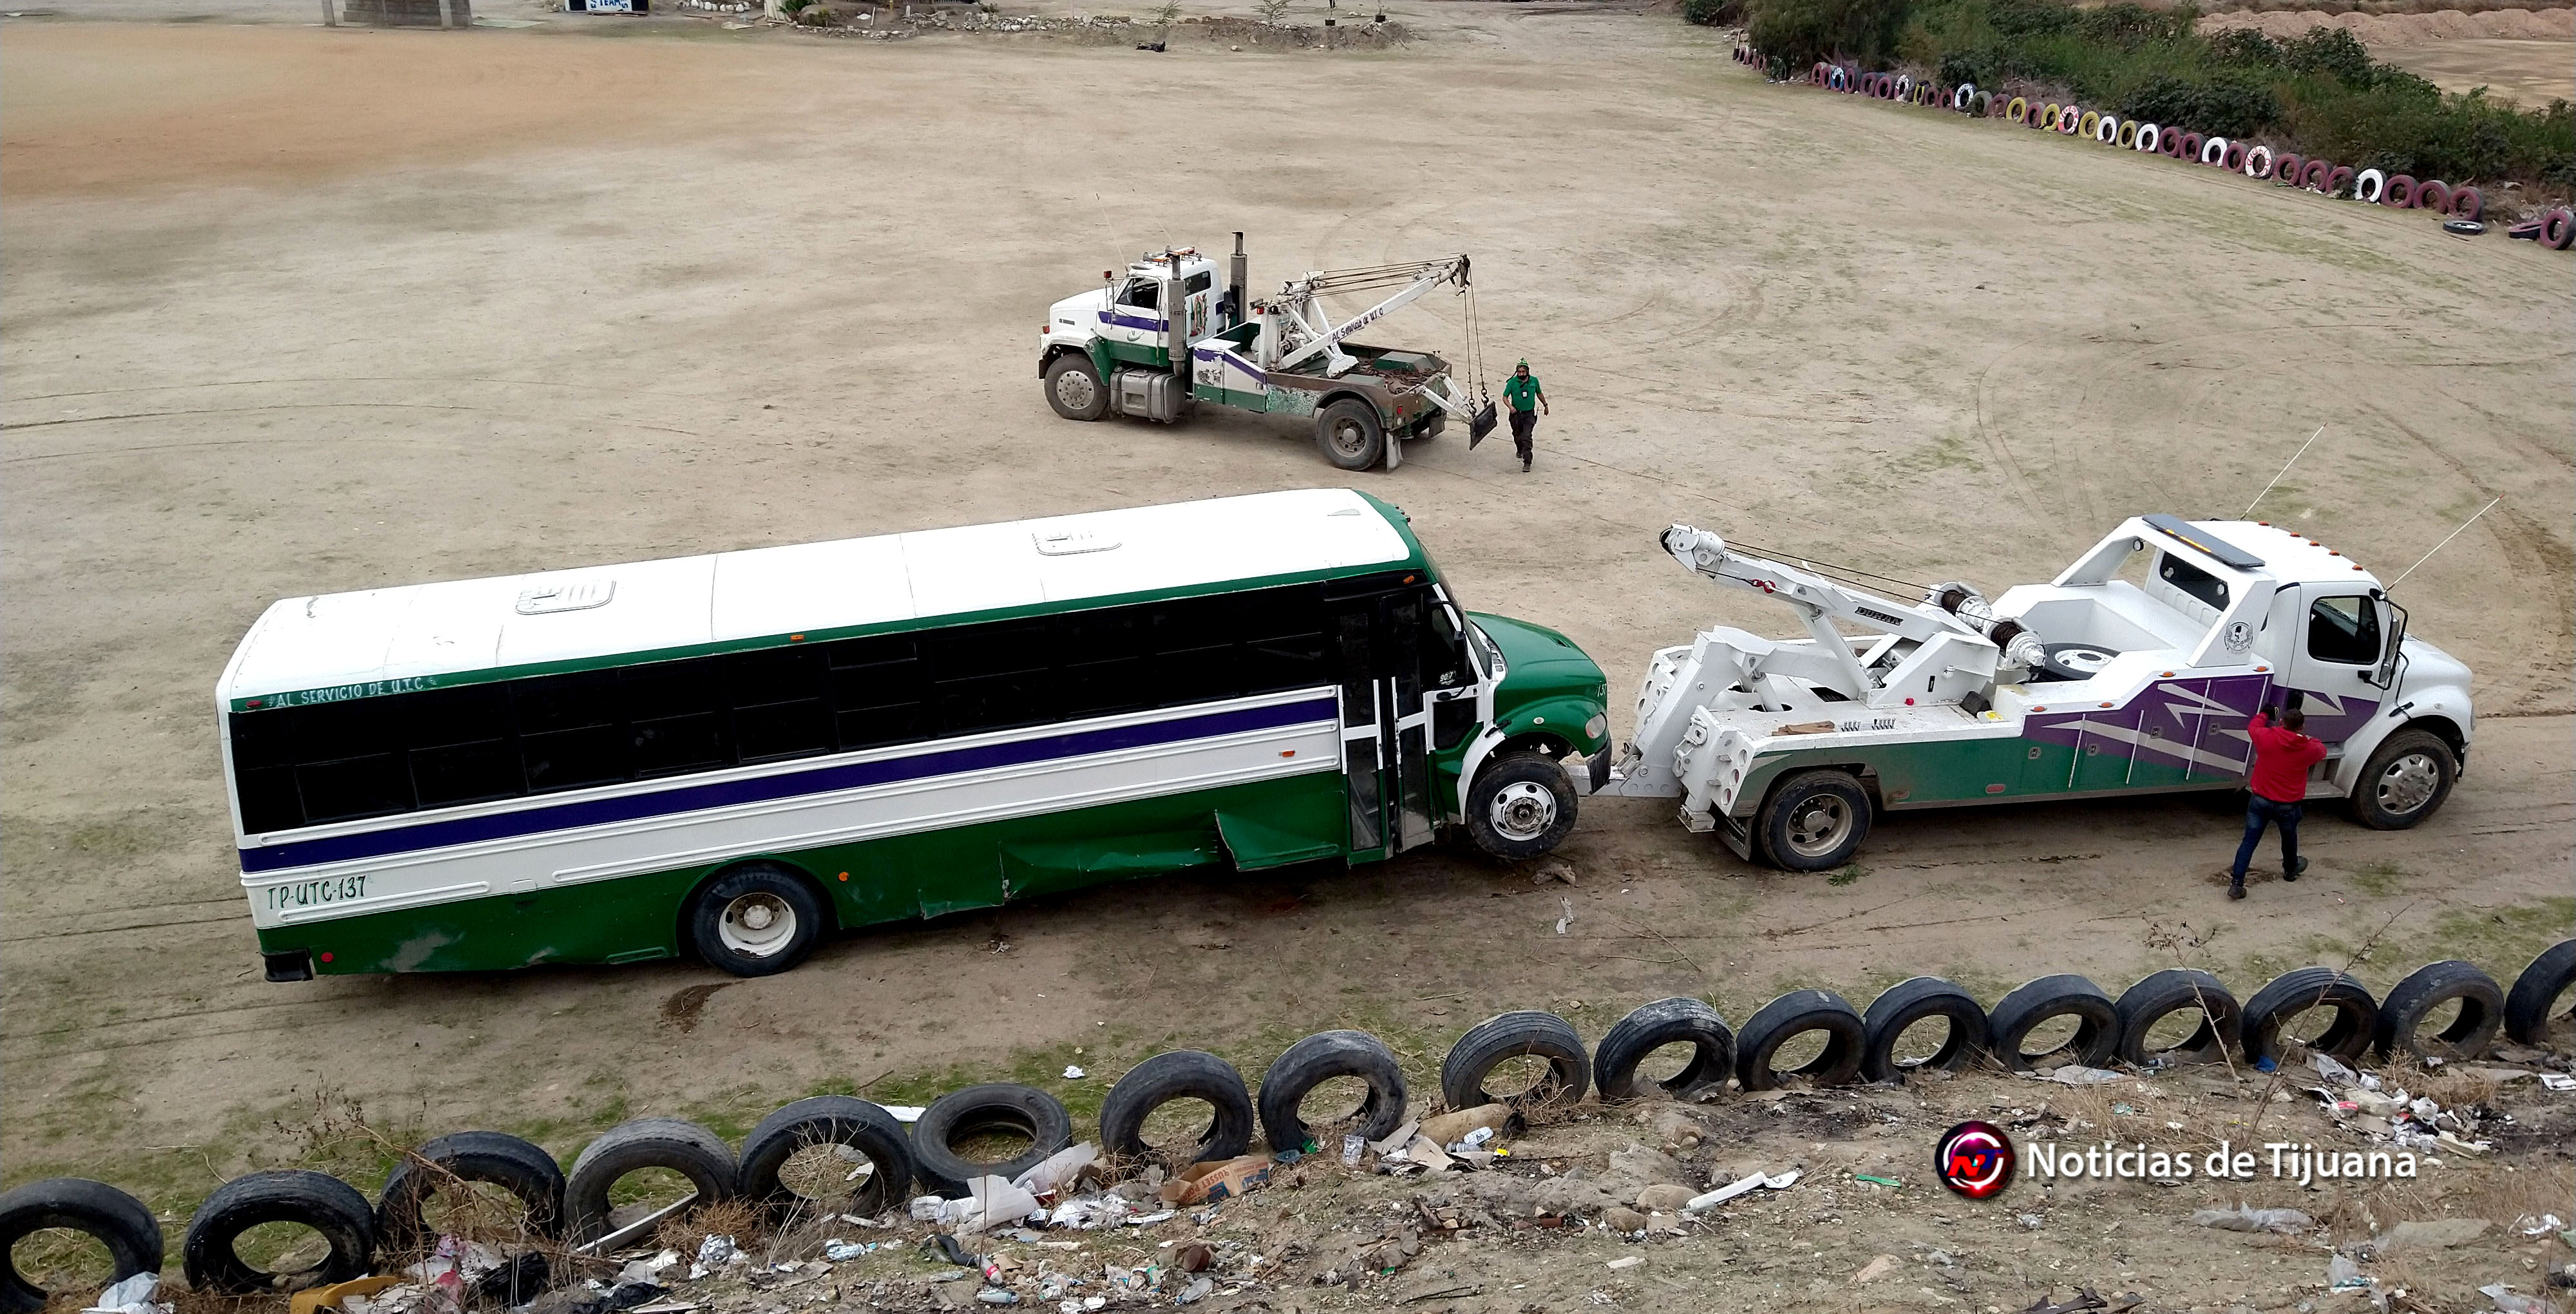 Camión de transporte cae a barranco  frente al panteón “Monte de los Olivos” (foto&video)|